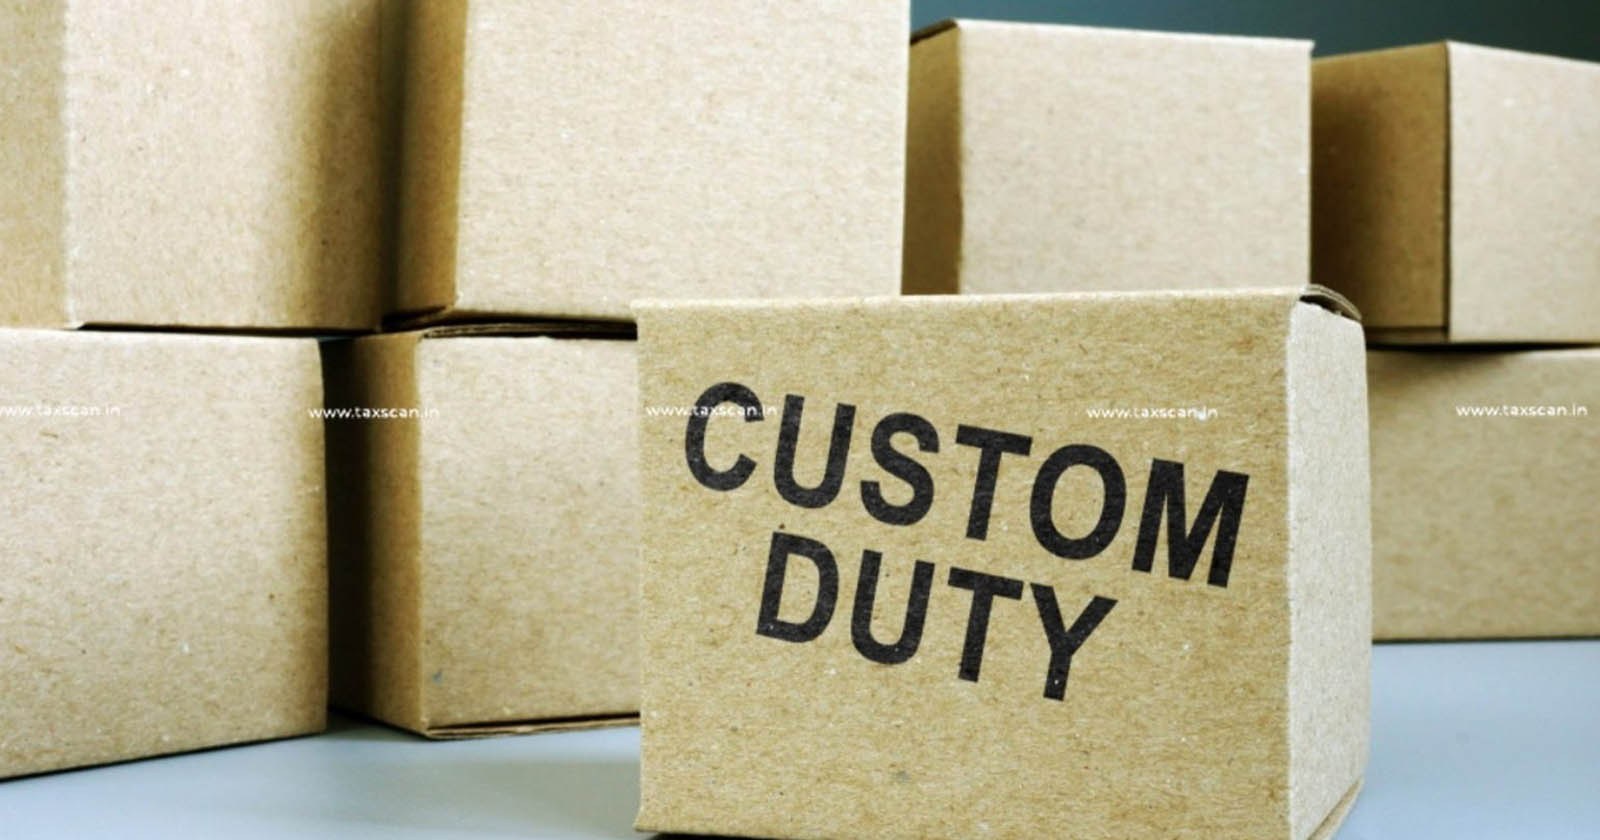 CESTAT - CESTAT Bangalore - Customs duty - Mere Omission - TAXSCAN